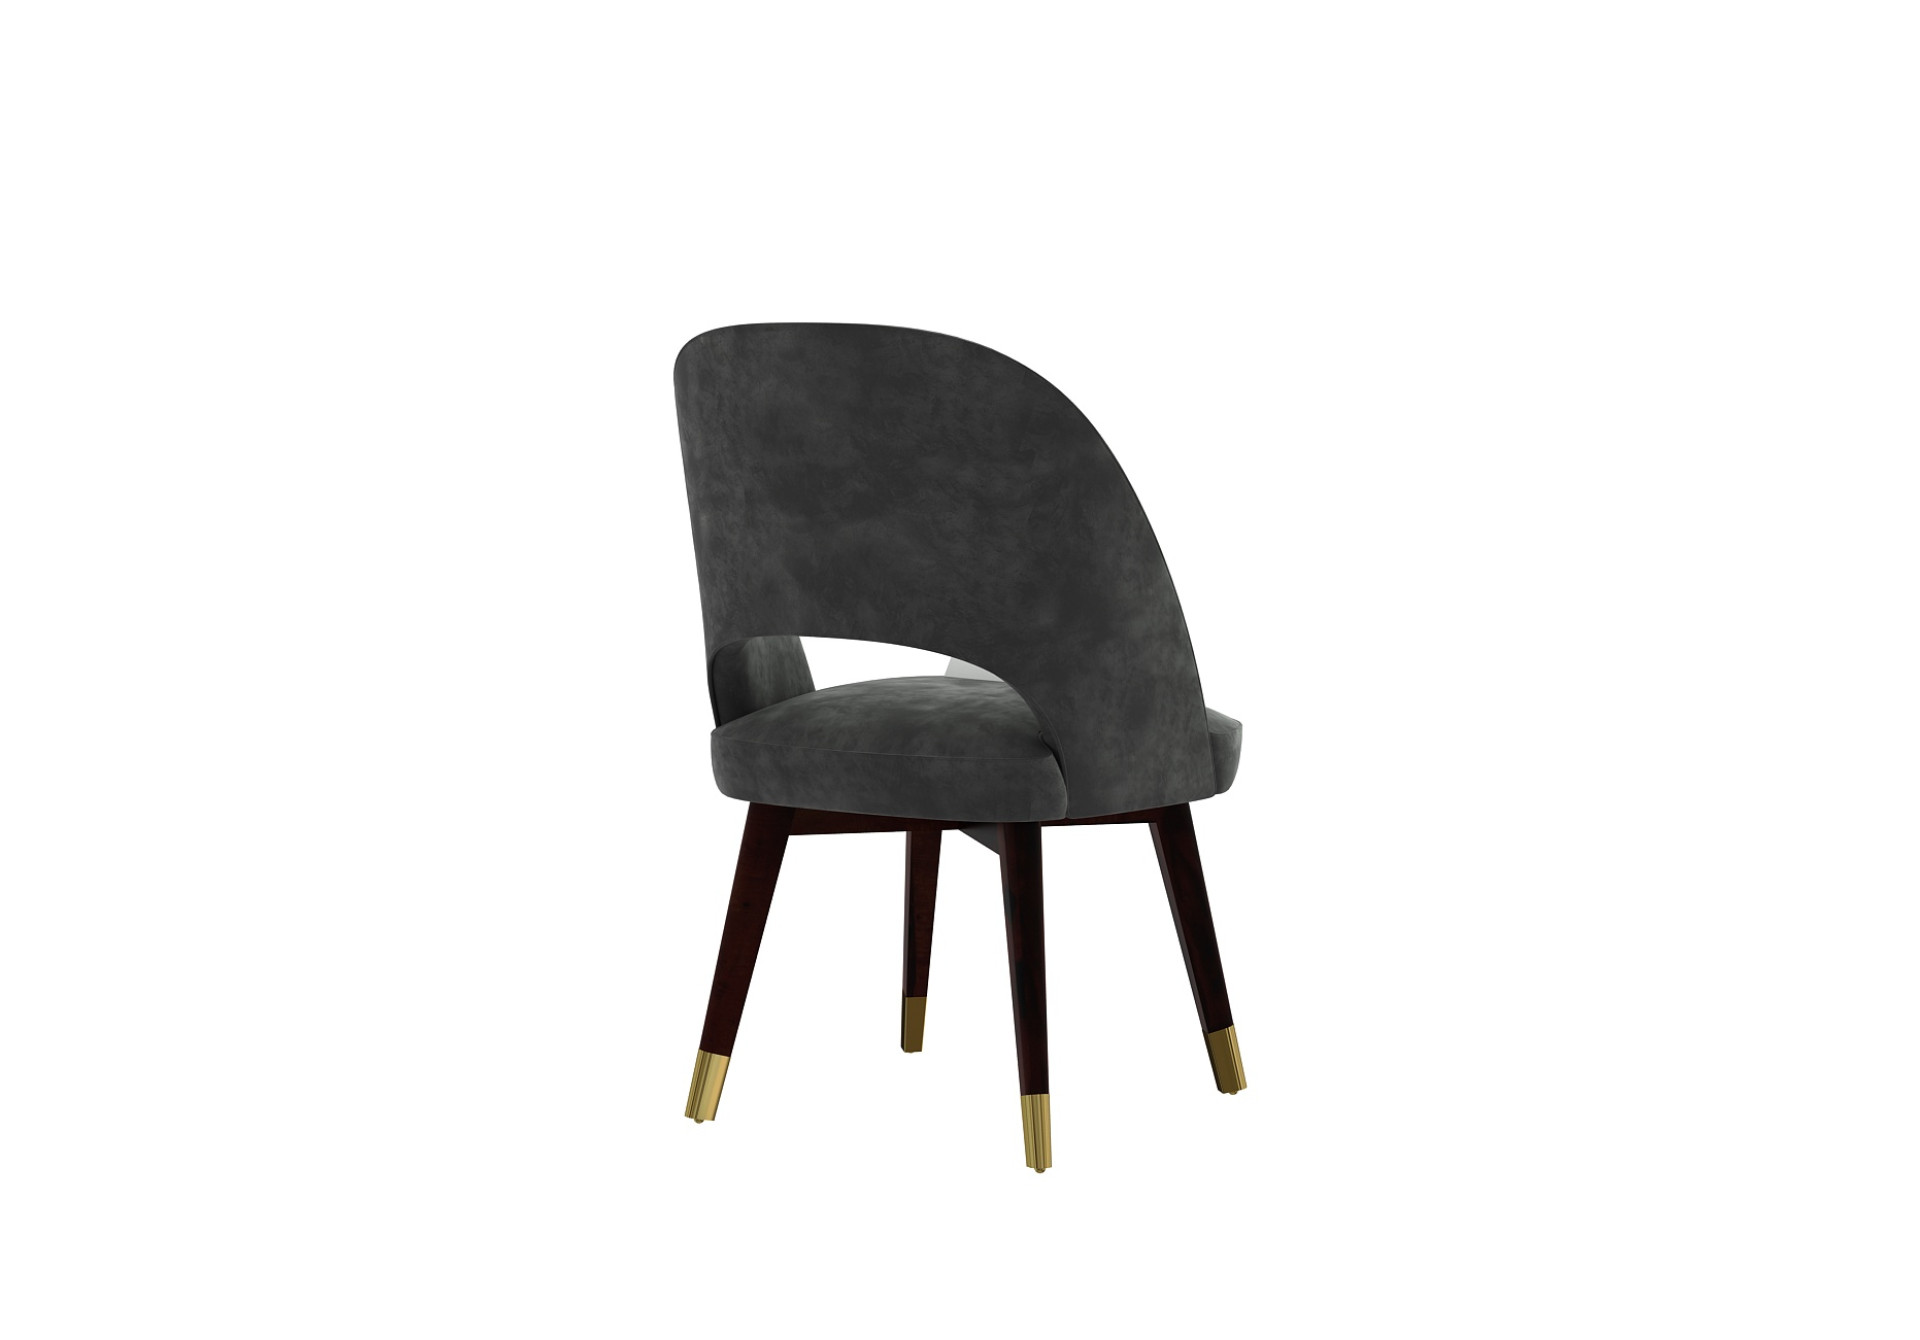 Luna Carved Back Dining Chair - Set Of 2 (Velvet, Stone Grey)